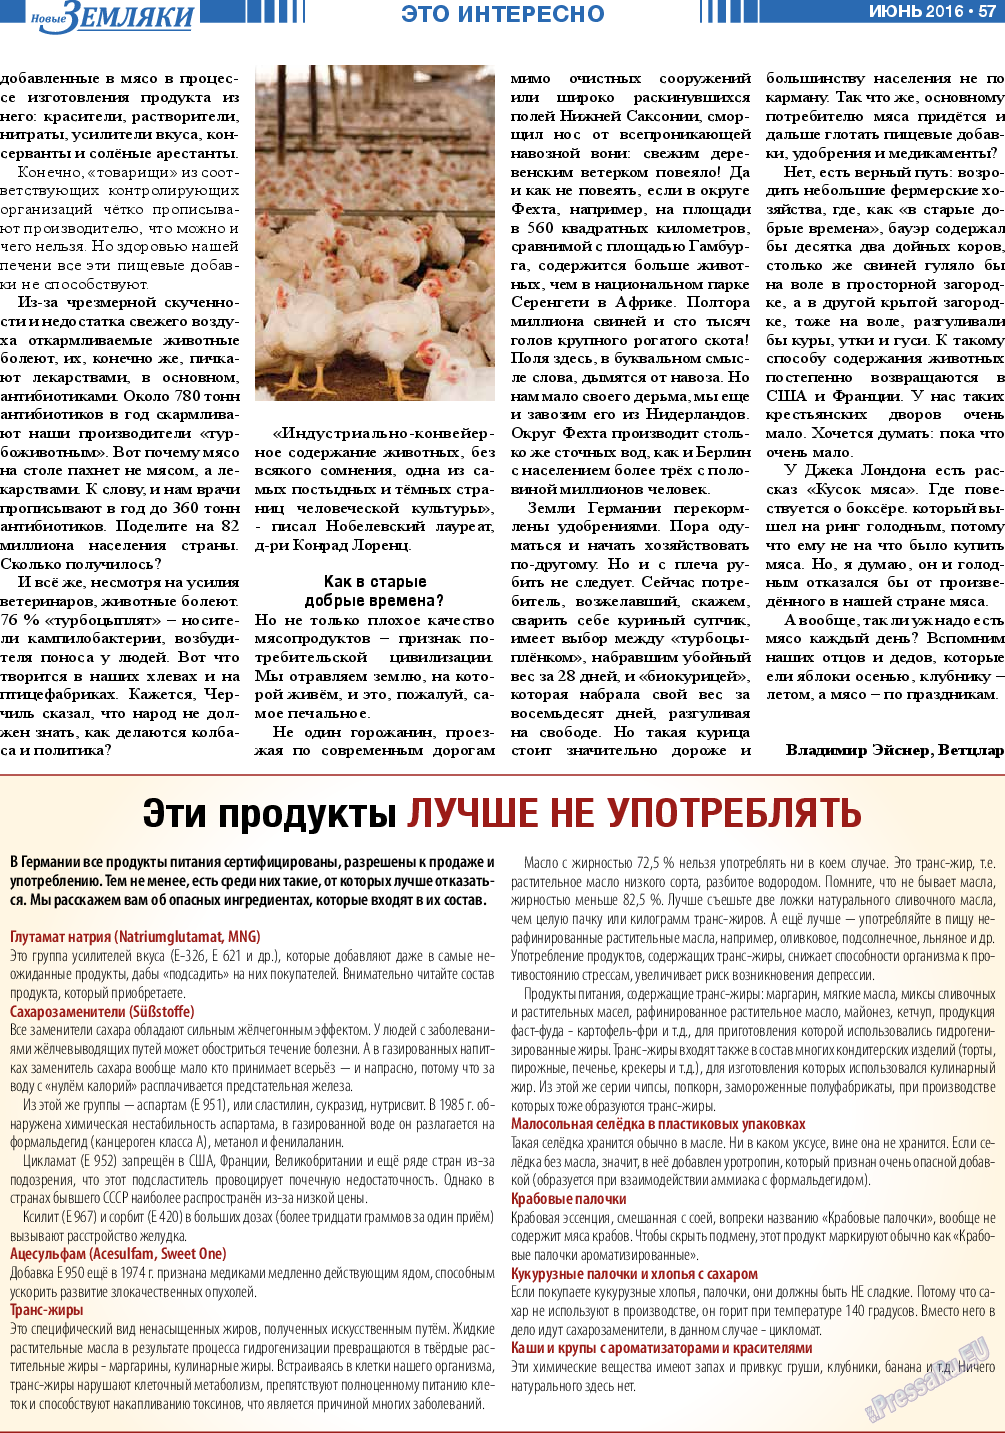 Новые Земляки, газета. 2016 №6 стр.57